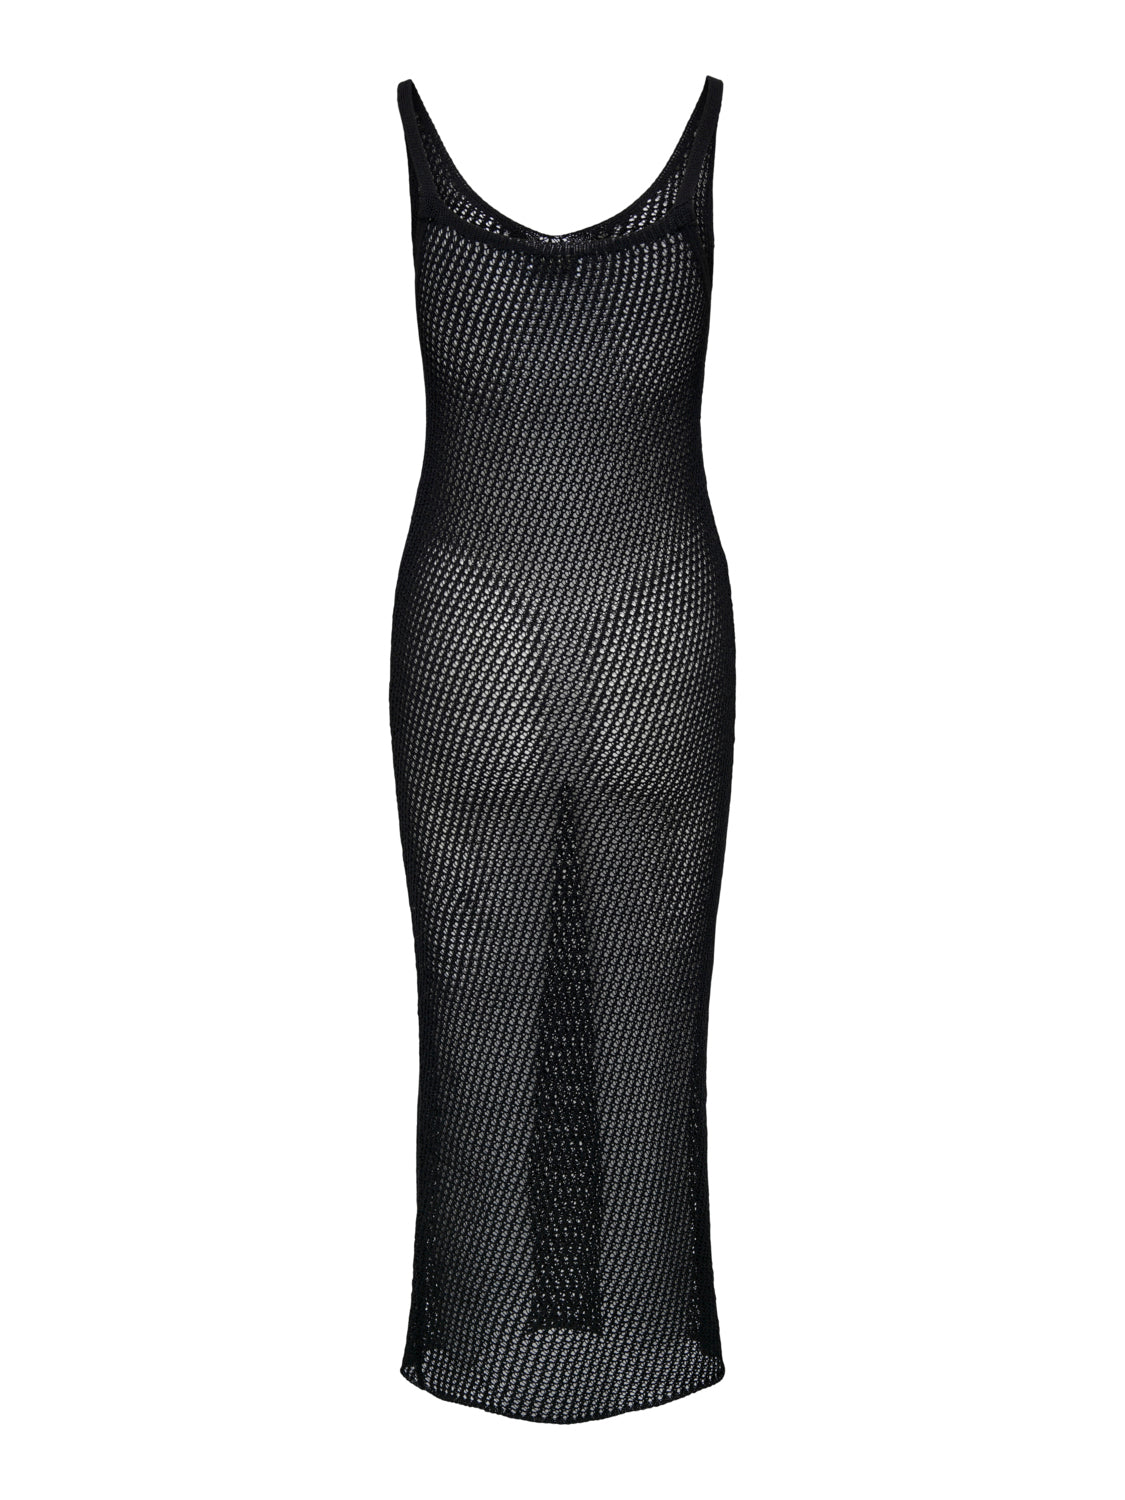 ONLMERMAID Dress - Black